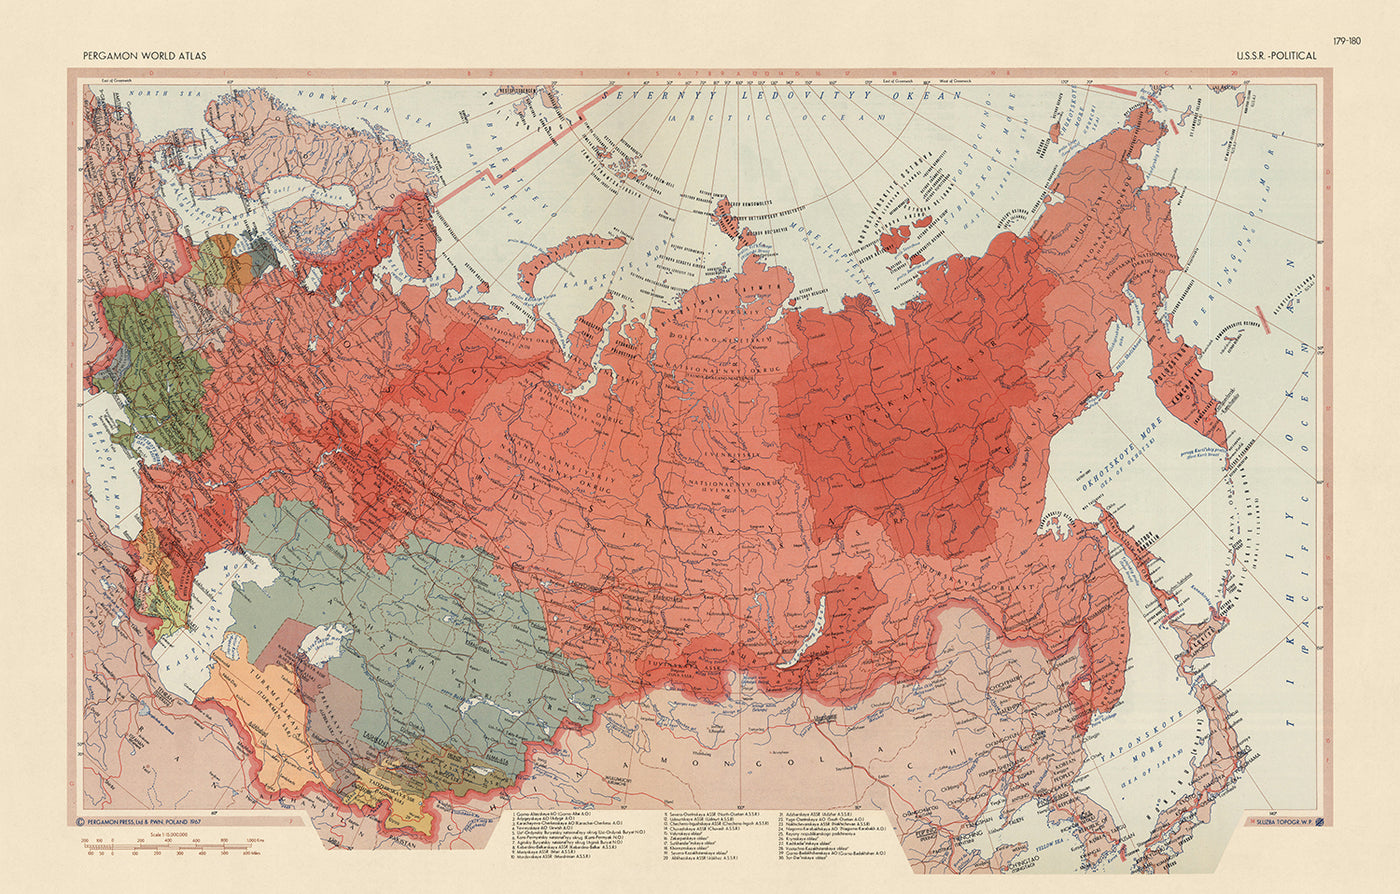 Alte Karte der Sowjetunion vom Topographischen Dienst der polnischen Armee, 1967: Kasachstan, Ukraine, Litauen, Arktischer Ozean, Geopolitik des Kalten Krieges